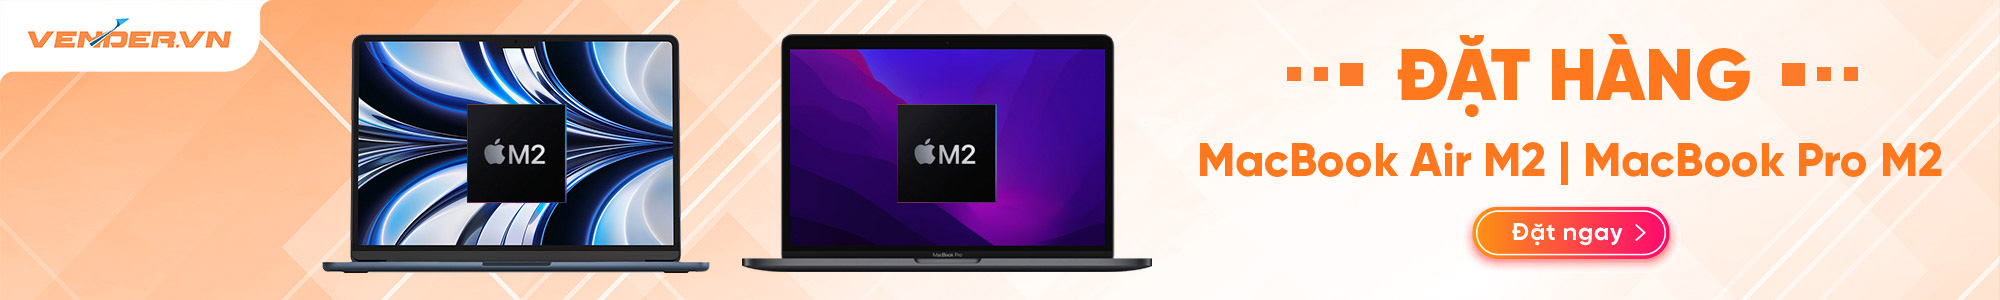 Đặt hàng trước MacBook Pro M2 và MacBook Air M2